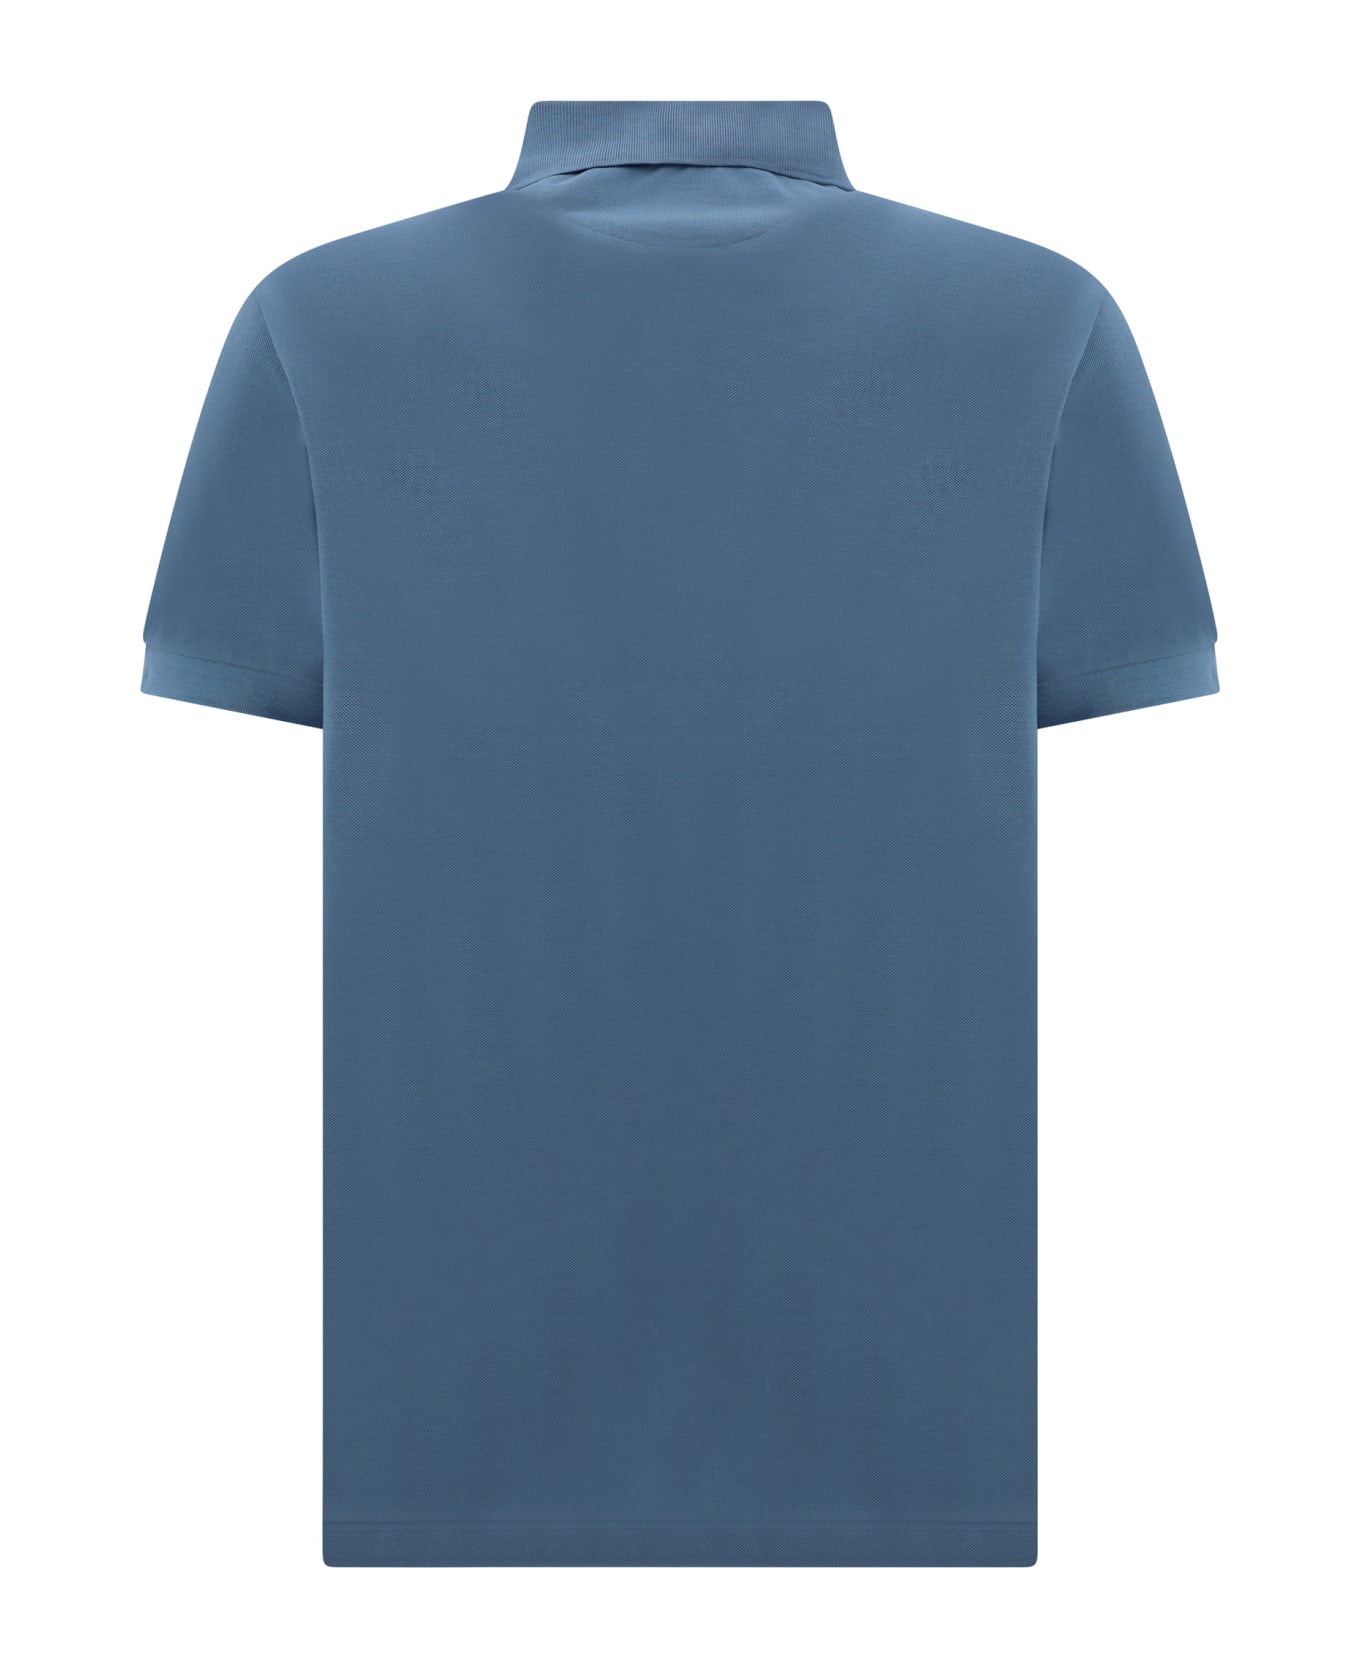 Paul Smith Polo Shirt - 44b